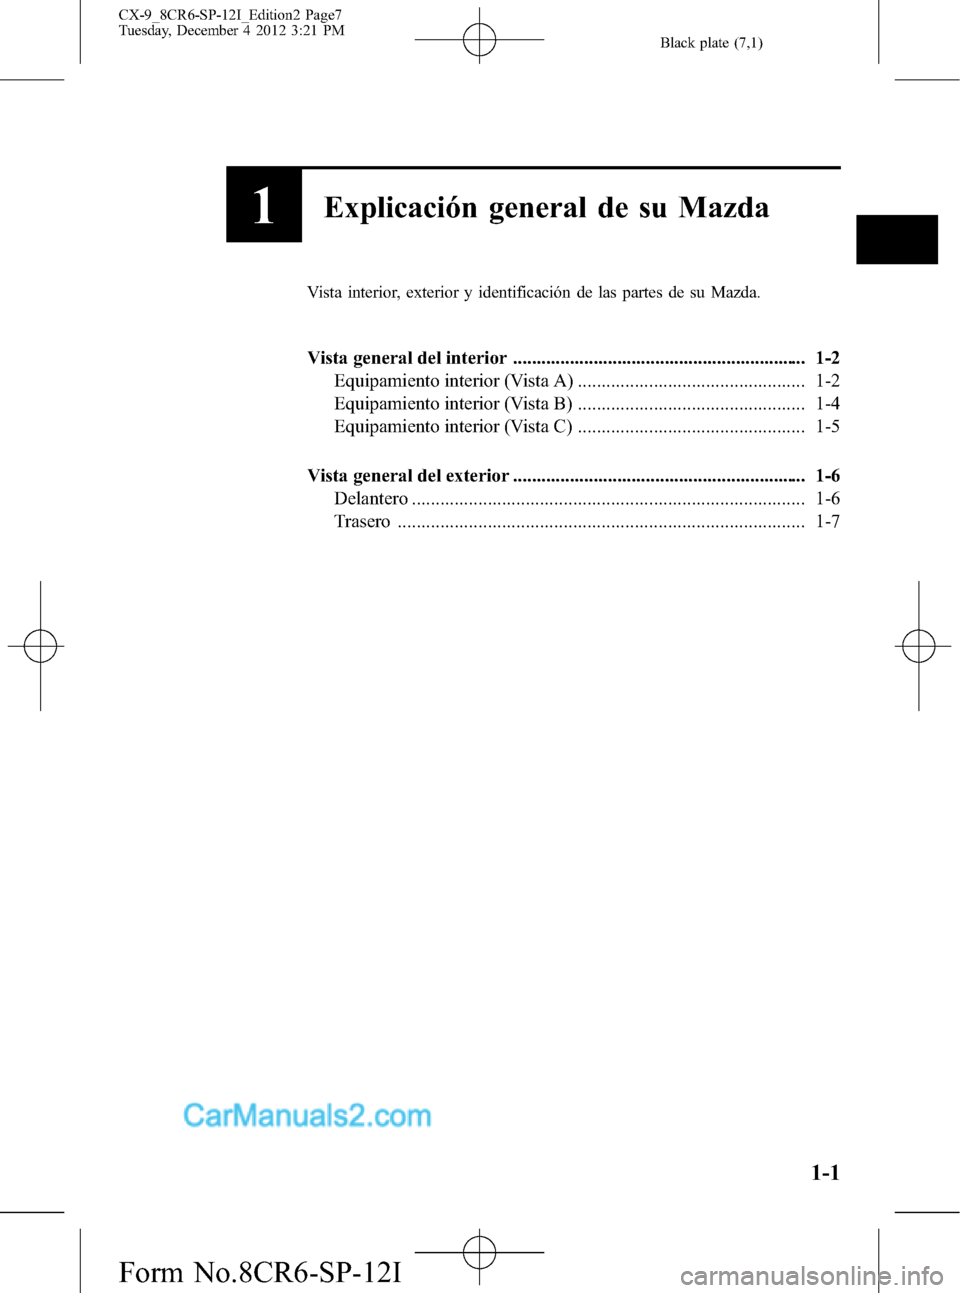 MAZDA MODEL CX-9 2016  Manual del propietario (in Spanish)  Black plate (7,1)
1Explicación general de su Mazda
Vista interior, exterior y identificación de las partes de su Mazda.
Vista general del interior ...................................................